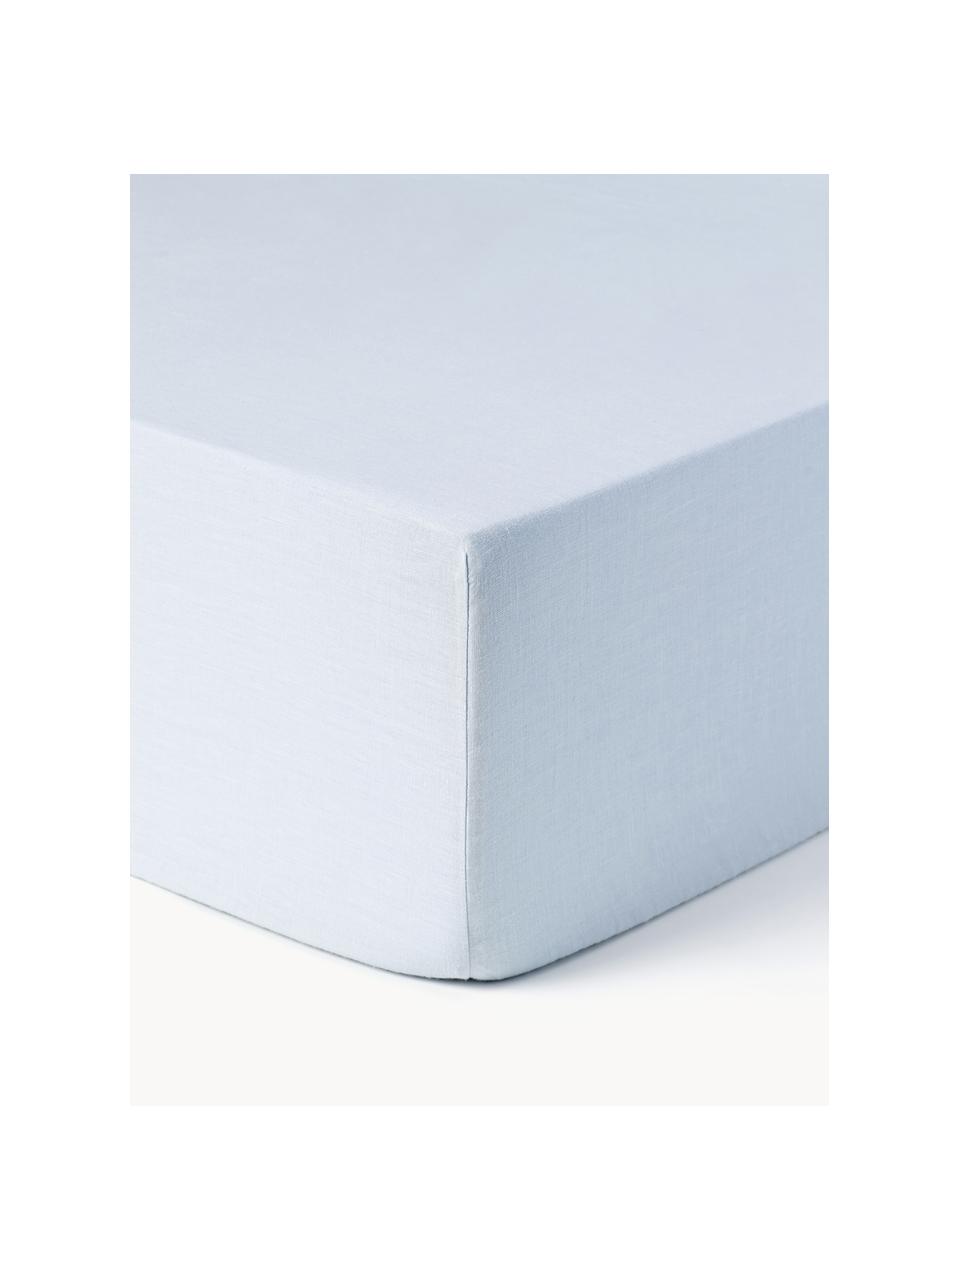 Drap-housse en lin délavé Airy, 100 % pur lin
Densité 110 fils par pouce carré, qualité standard

Le lin est une fibre naturelle qui se caractérise par sa respirabilité, sa résistance et sa douceur. Le lin est un matériau rafraîchissant et absorbant qui absorbe et évacue rapidement l'humidité, ce qui le rend idéal pour les températures chaudes.

Le matériau est certifié STANDARD 100 OEKO-TEX®, 15.HIN.65948, HOHENSTEIN HTTI, Bleu ciel, larg. 90 x long. 200 cm, haut. 25 cm